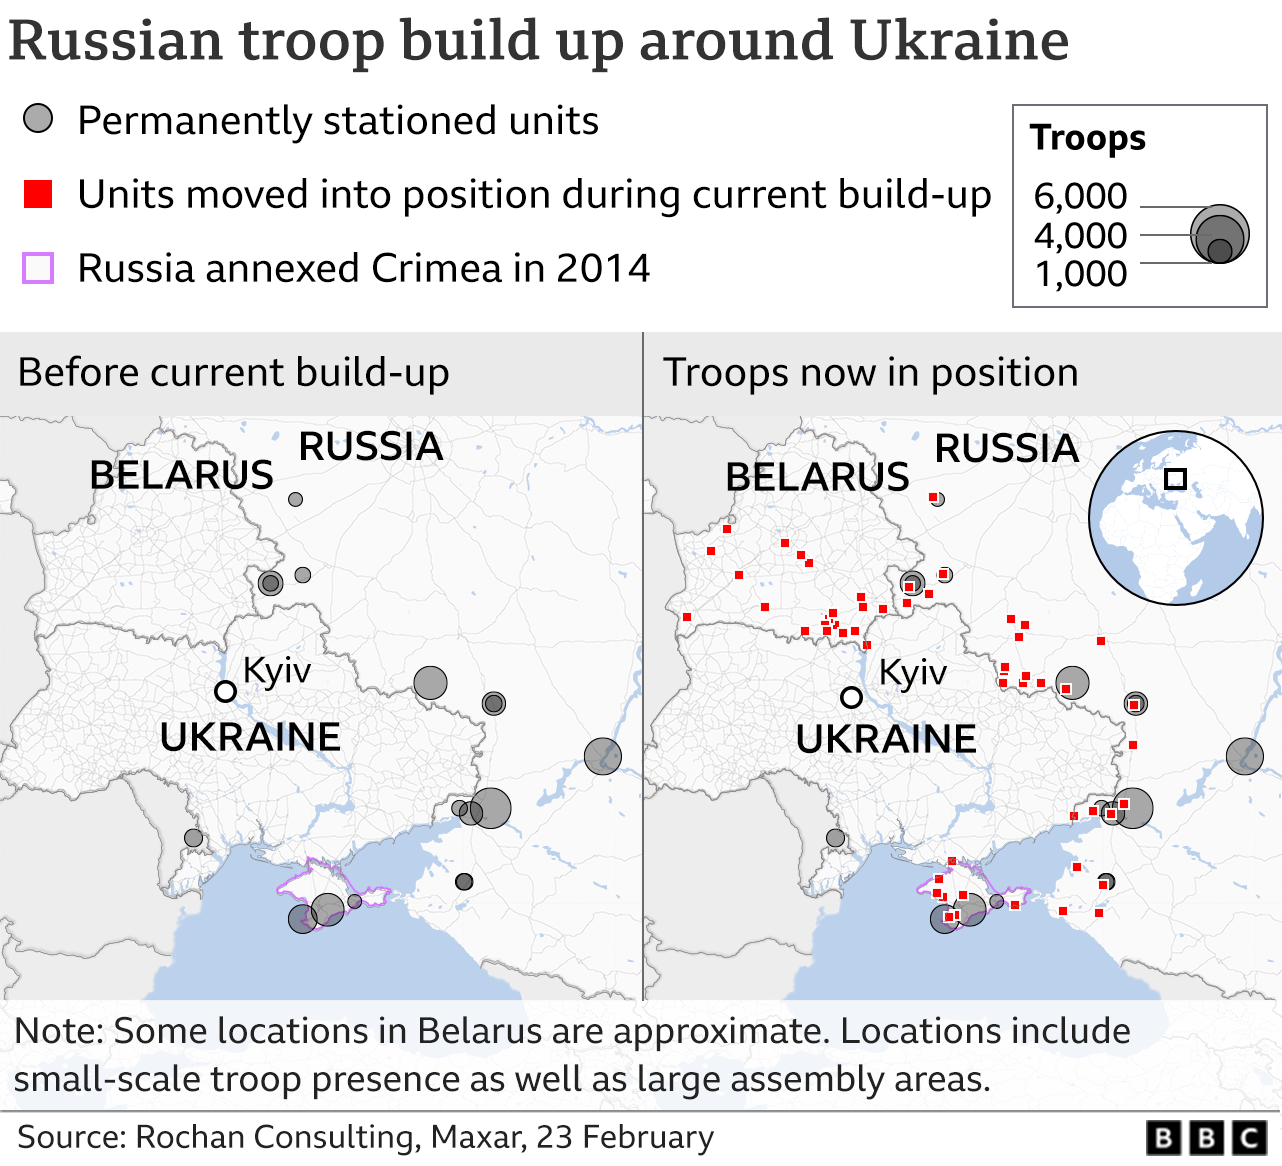 Harta që tregon se ku janë vendosur trupat ruse. Përditësuar më 23 SHKURT.